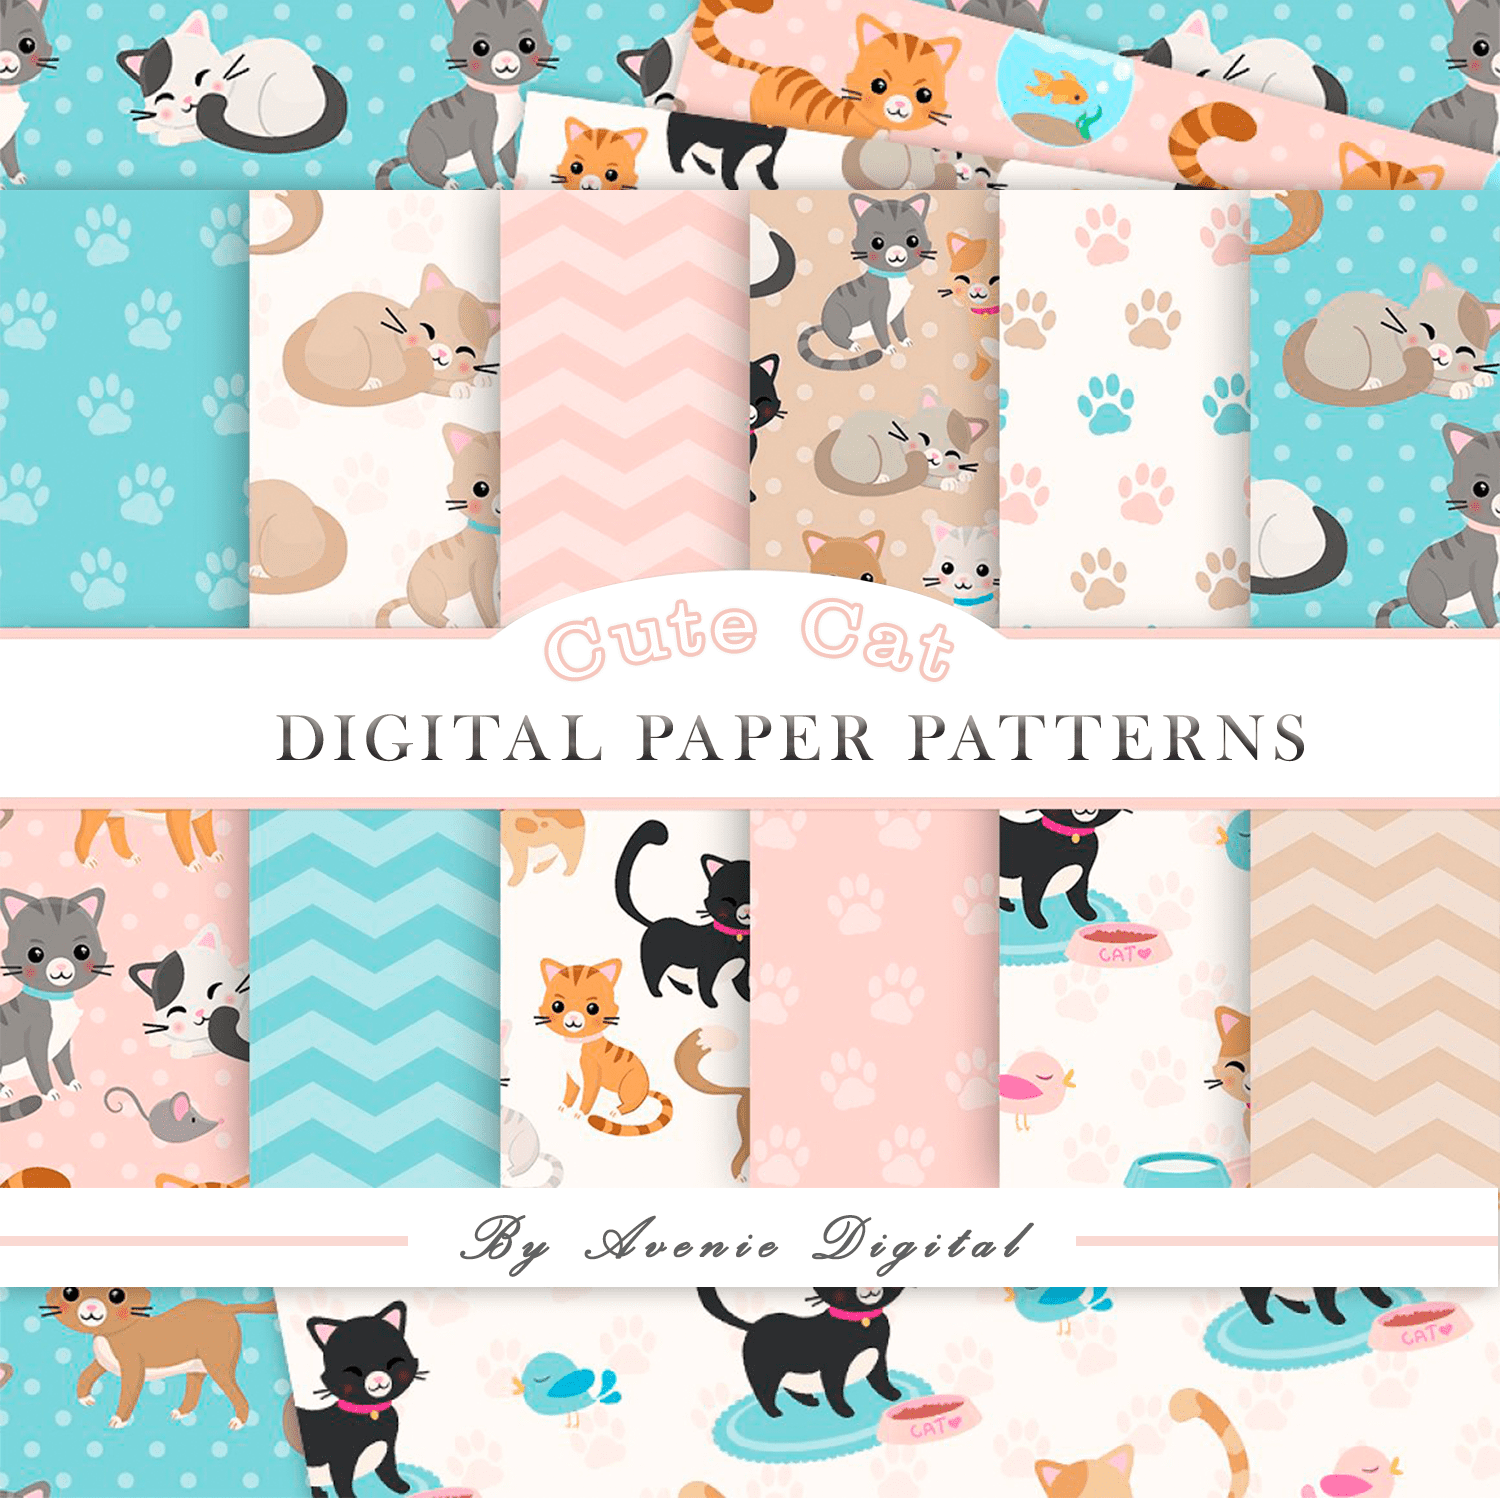 Cute Cat Digital Paper Patterns cover.